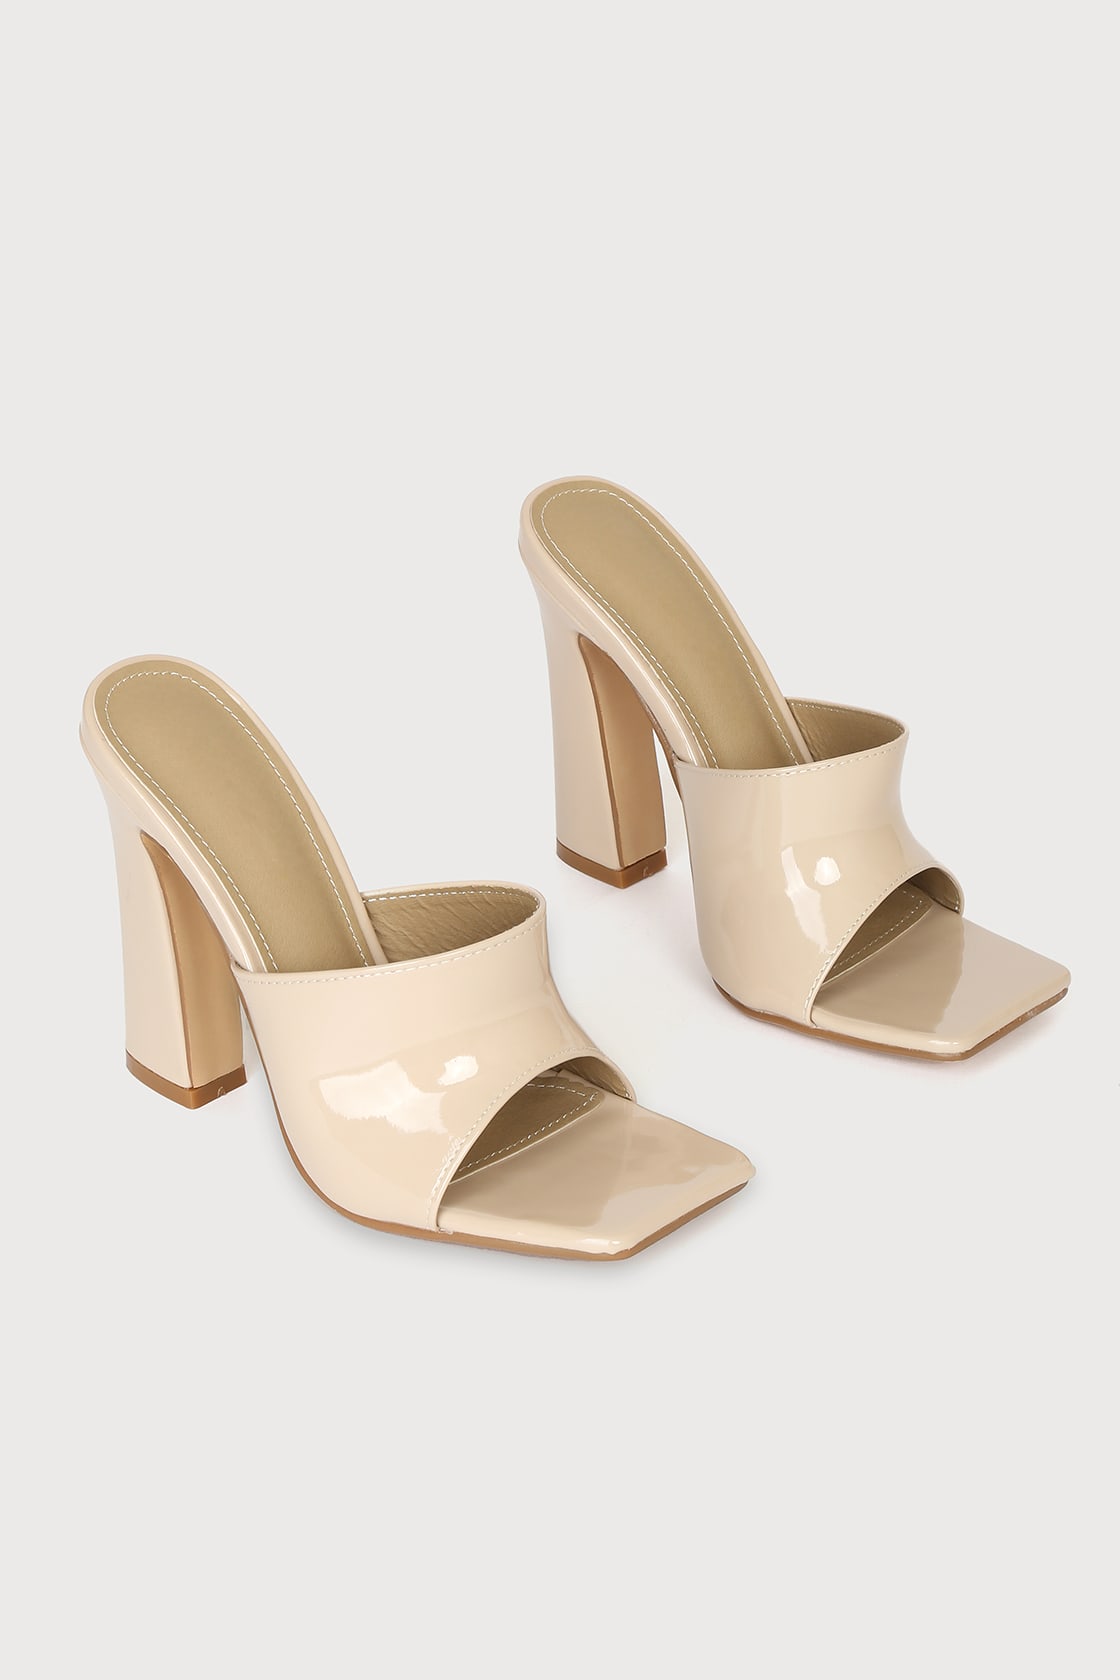 Cream Heels - Patent Heels - High Heel Sandals - Slide Sandals - Lulus